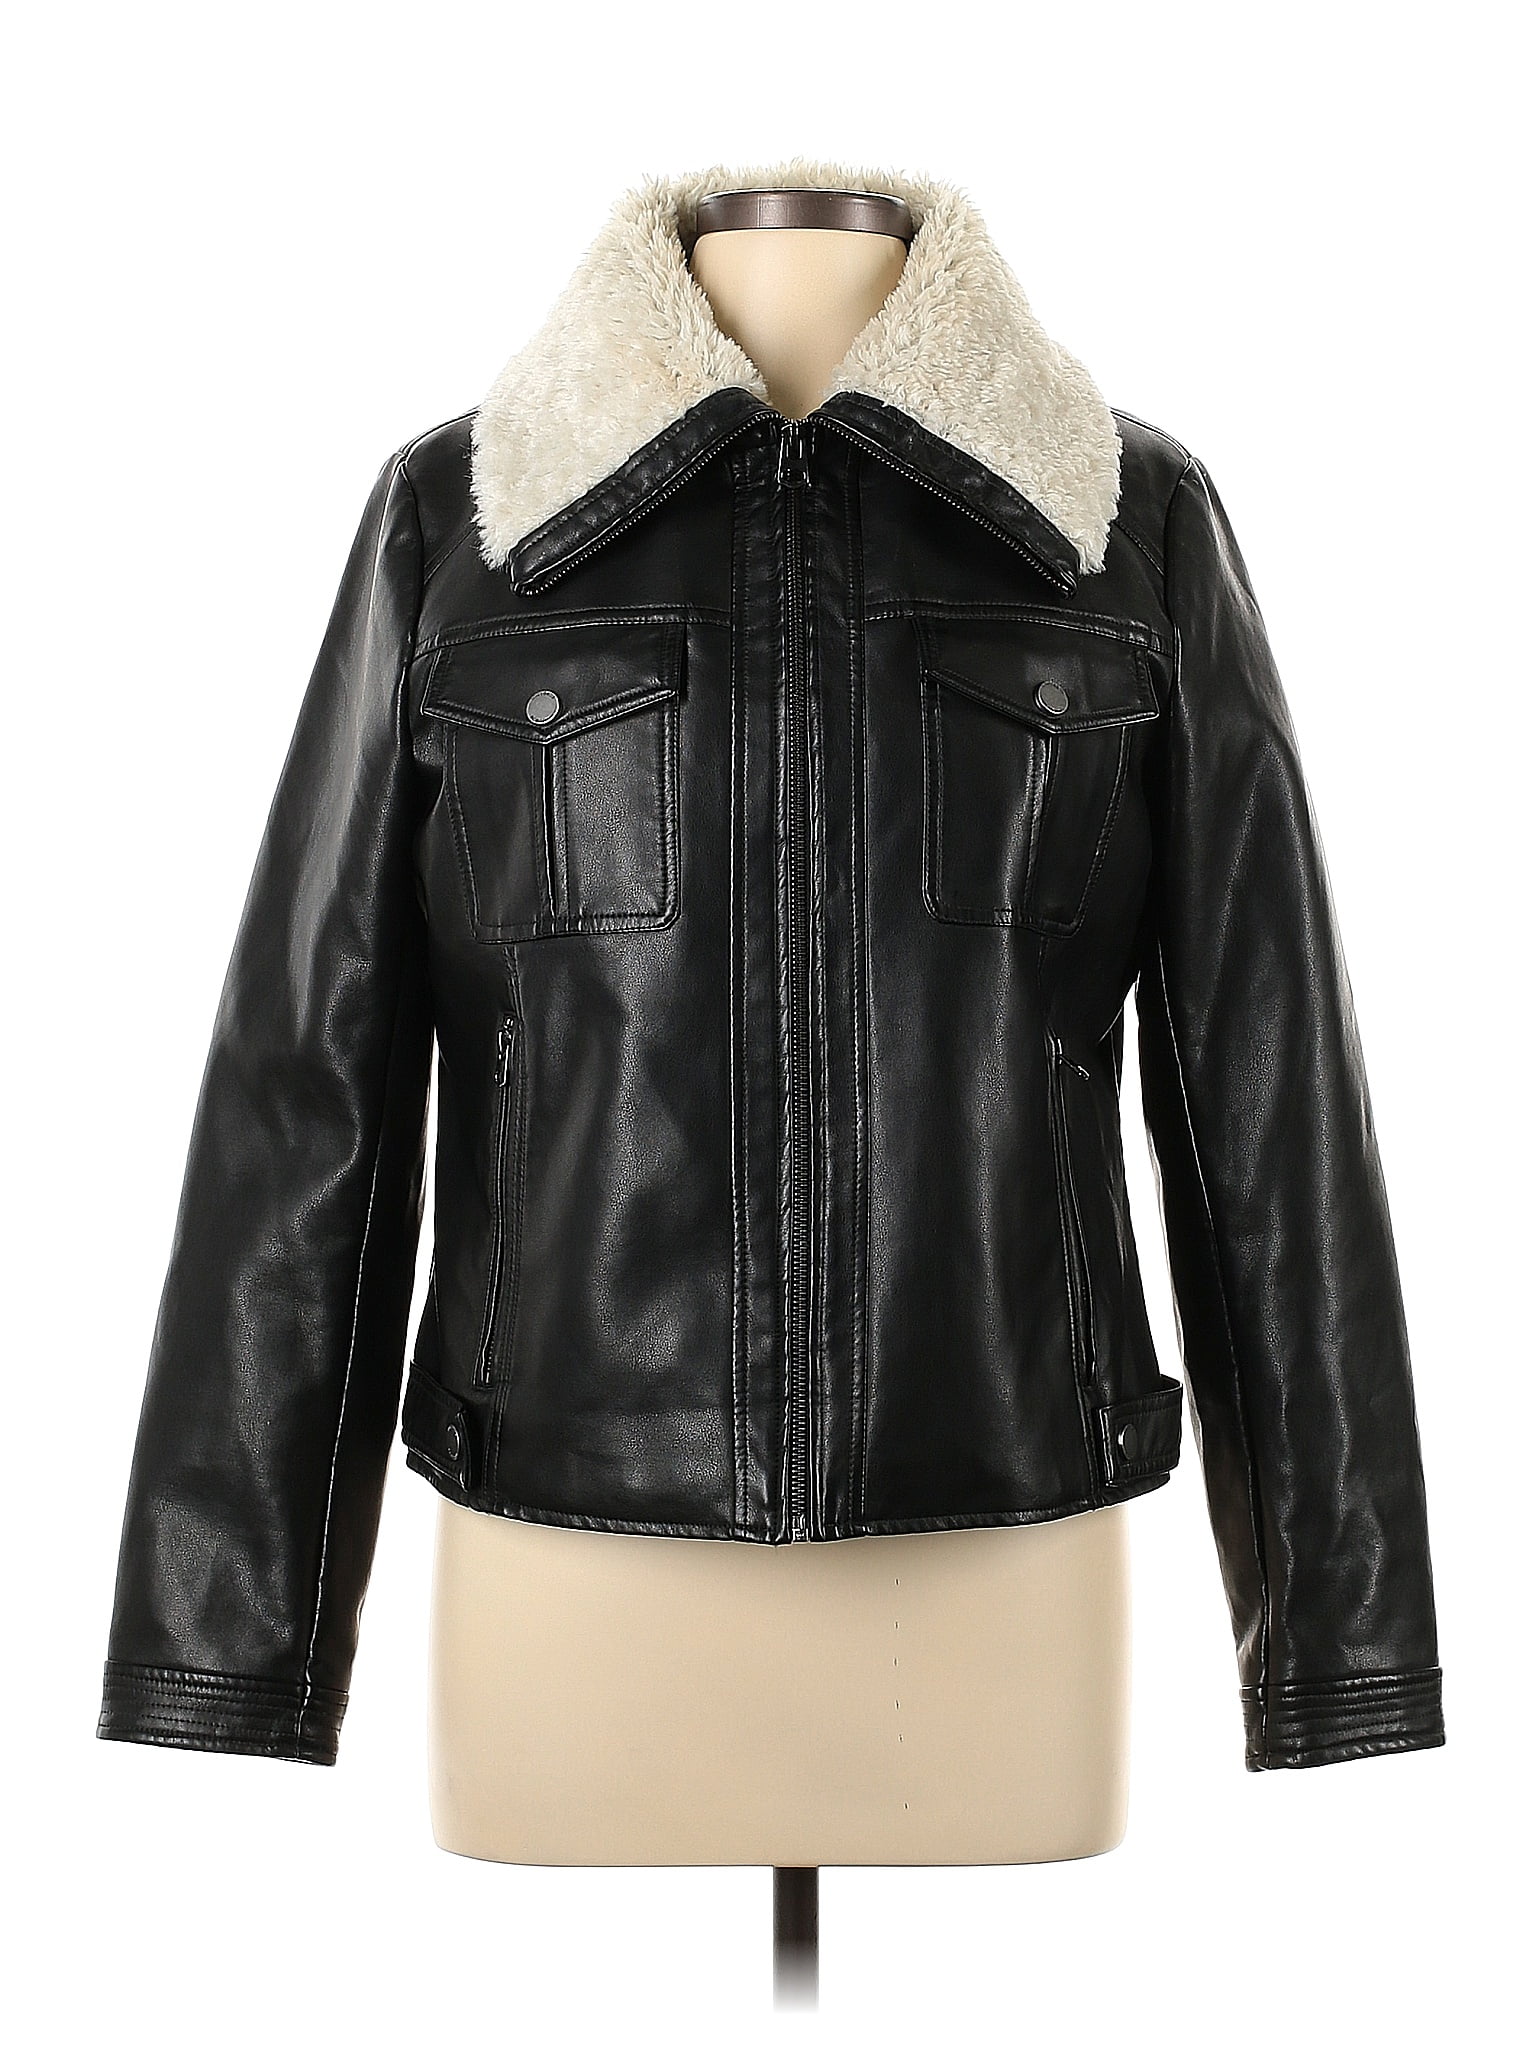 BCBG Paris 100% Polyurethane Solid Black Faux Leather Jacket Size L ...